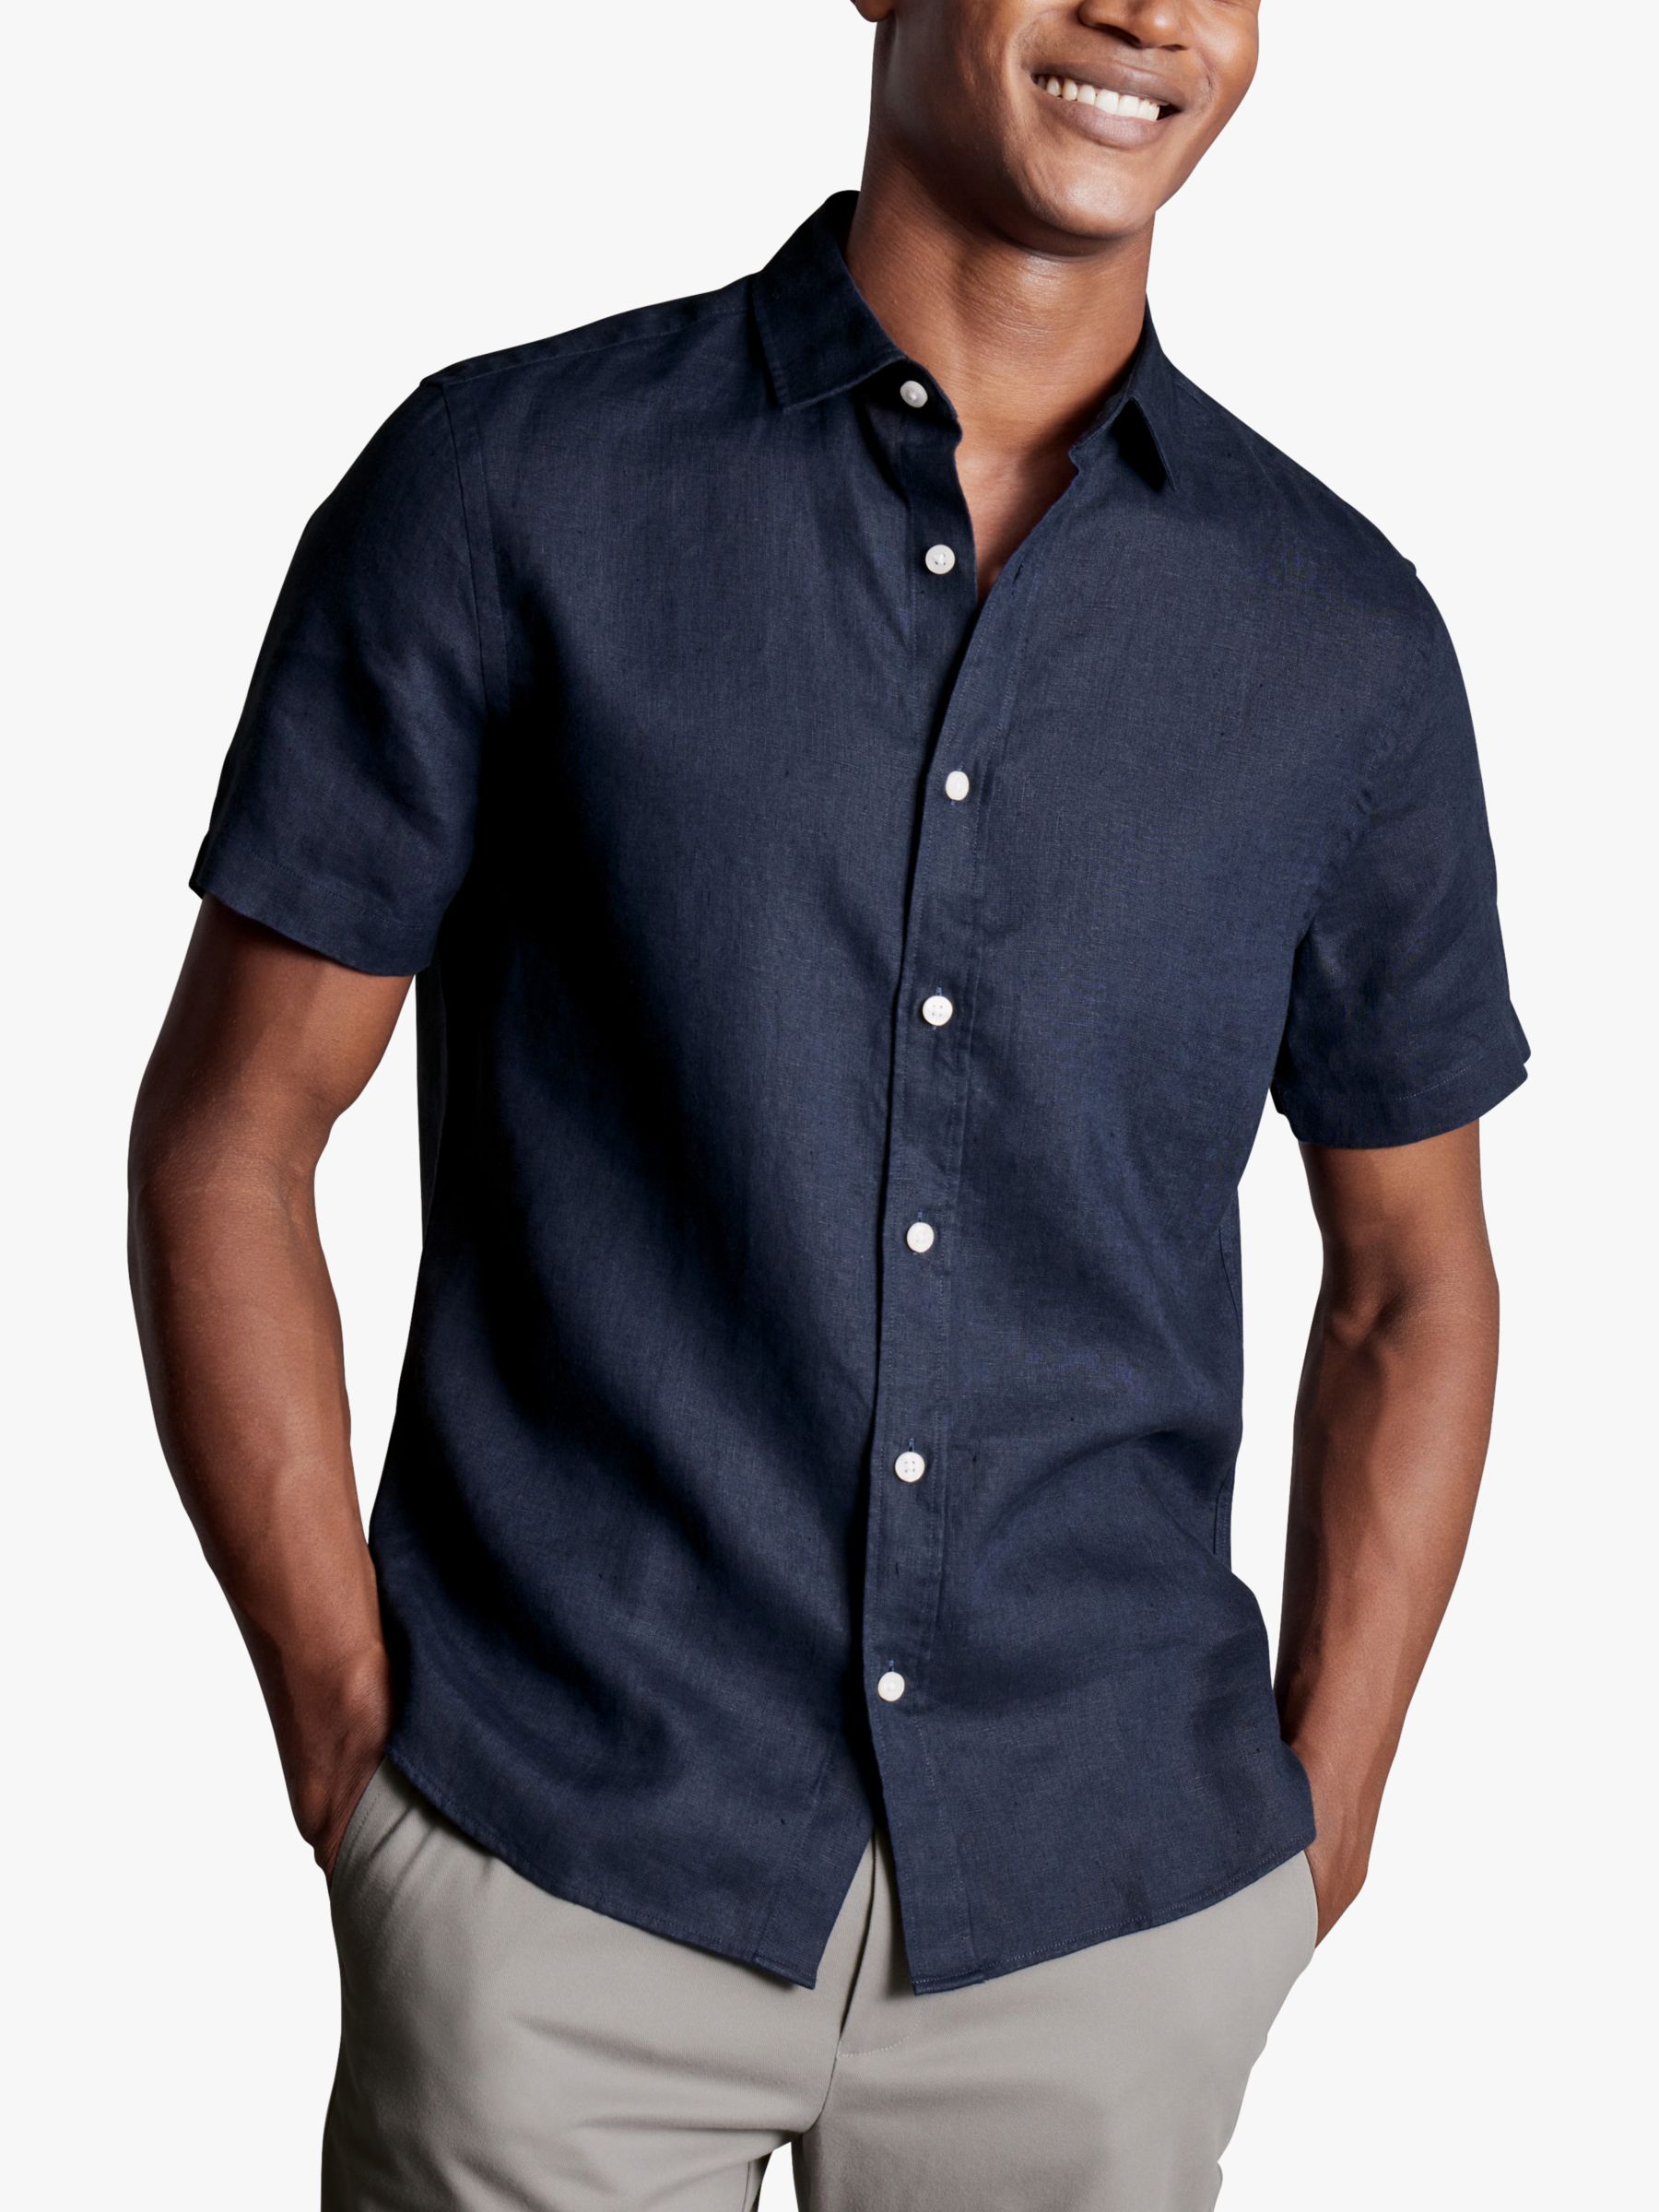 Charles Tyrwhitt Linen Short Sleeve Shirt, Navy, S